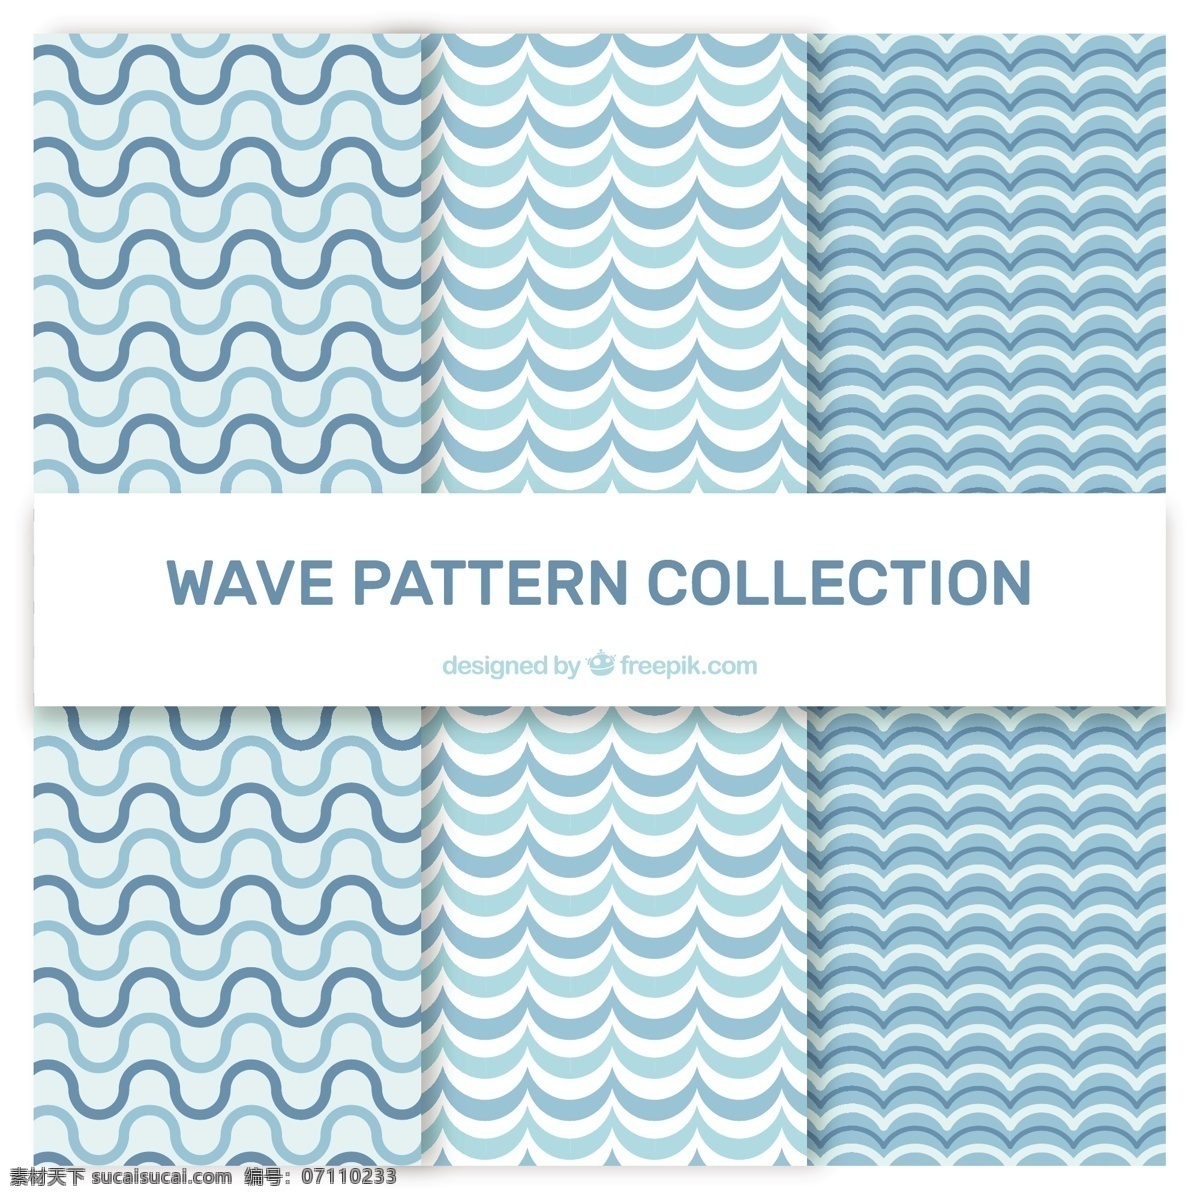 平面设计 中 各种 波形 背景 图案 抽象背景 抽象 水 波浪 自然 海洋 色彩 平面 装饰 水彩 无缝图案